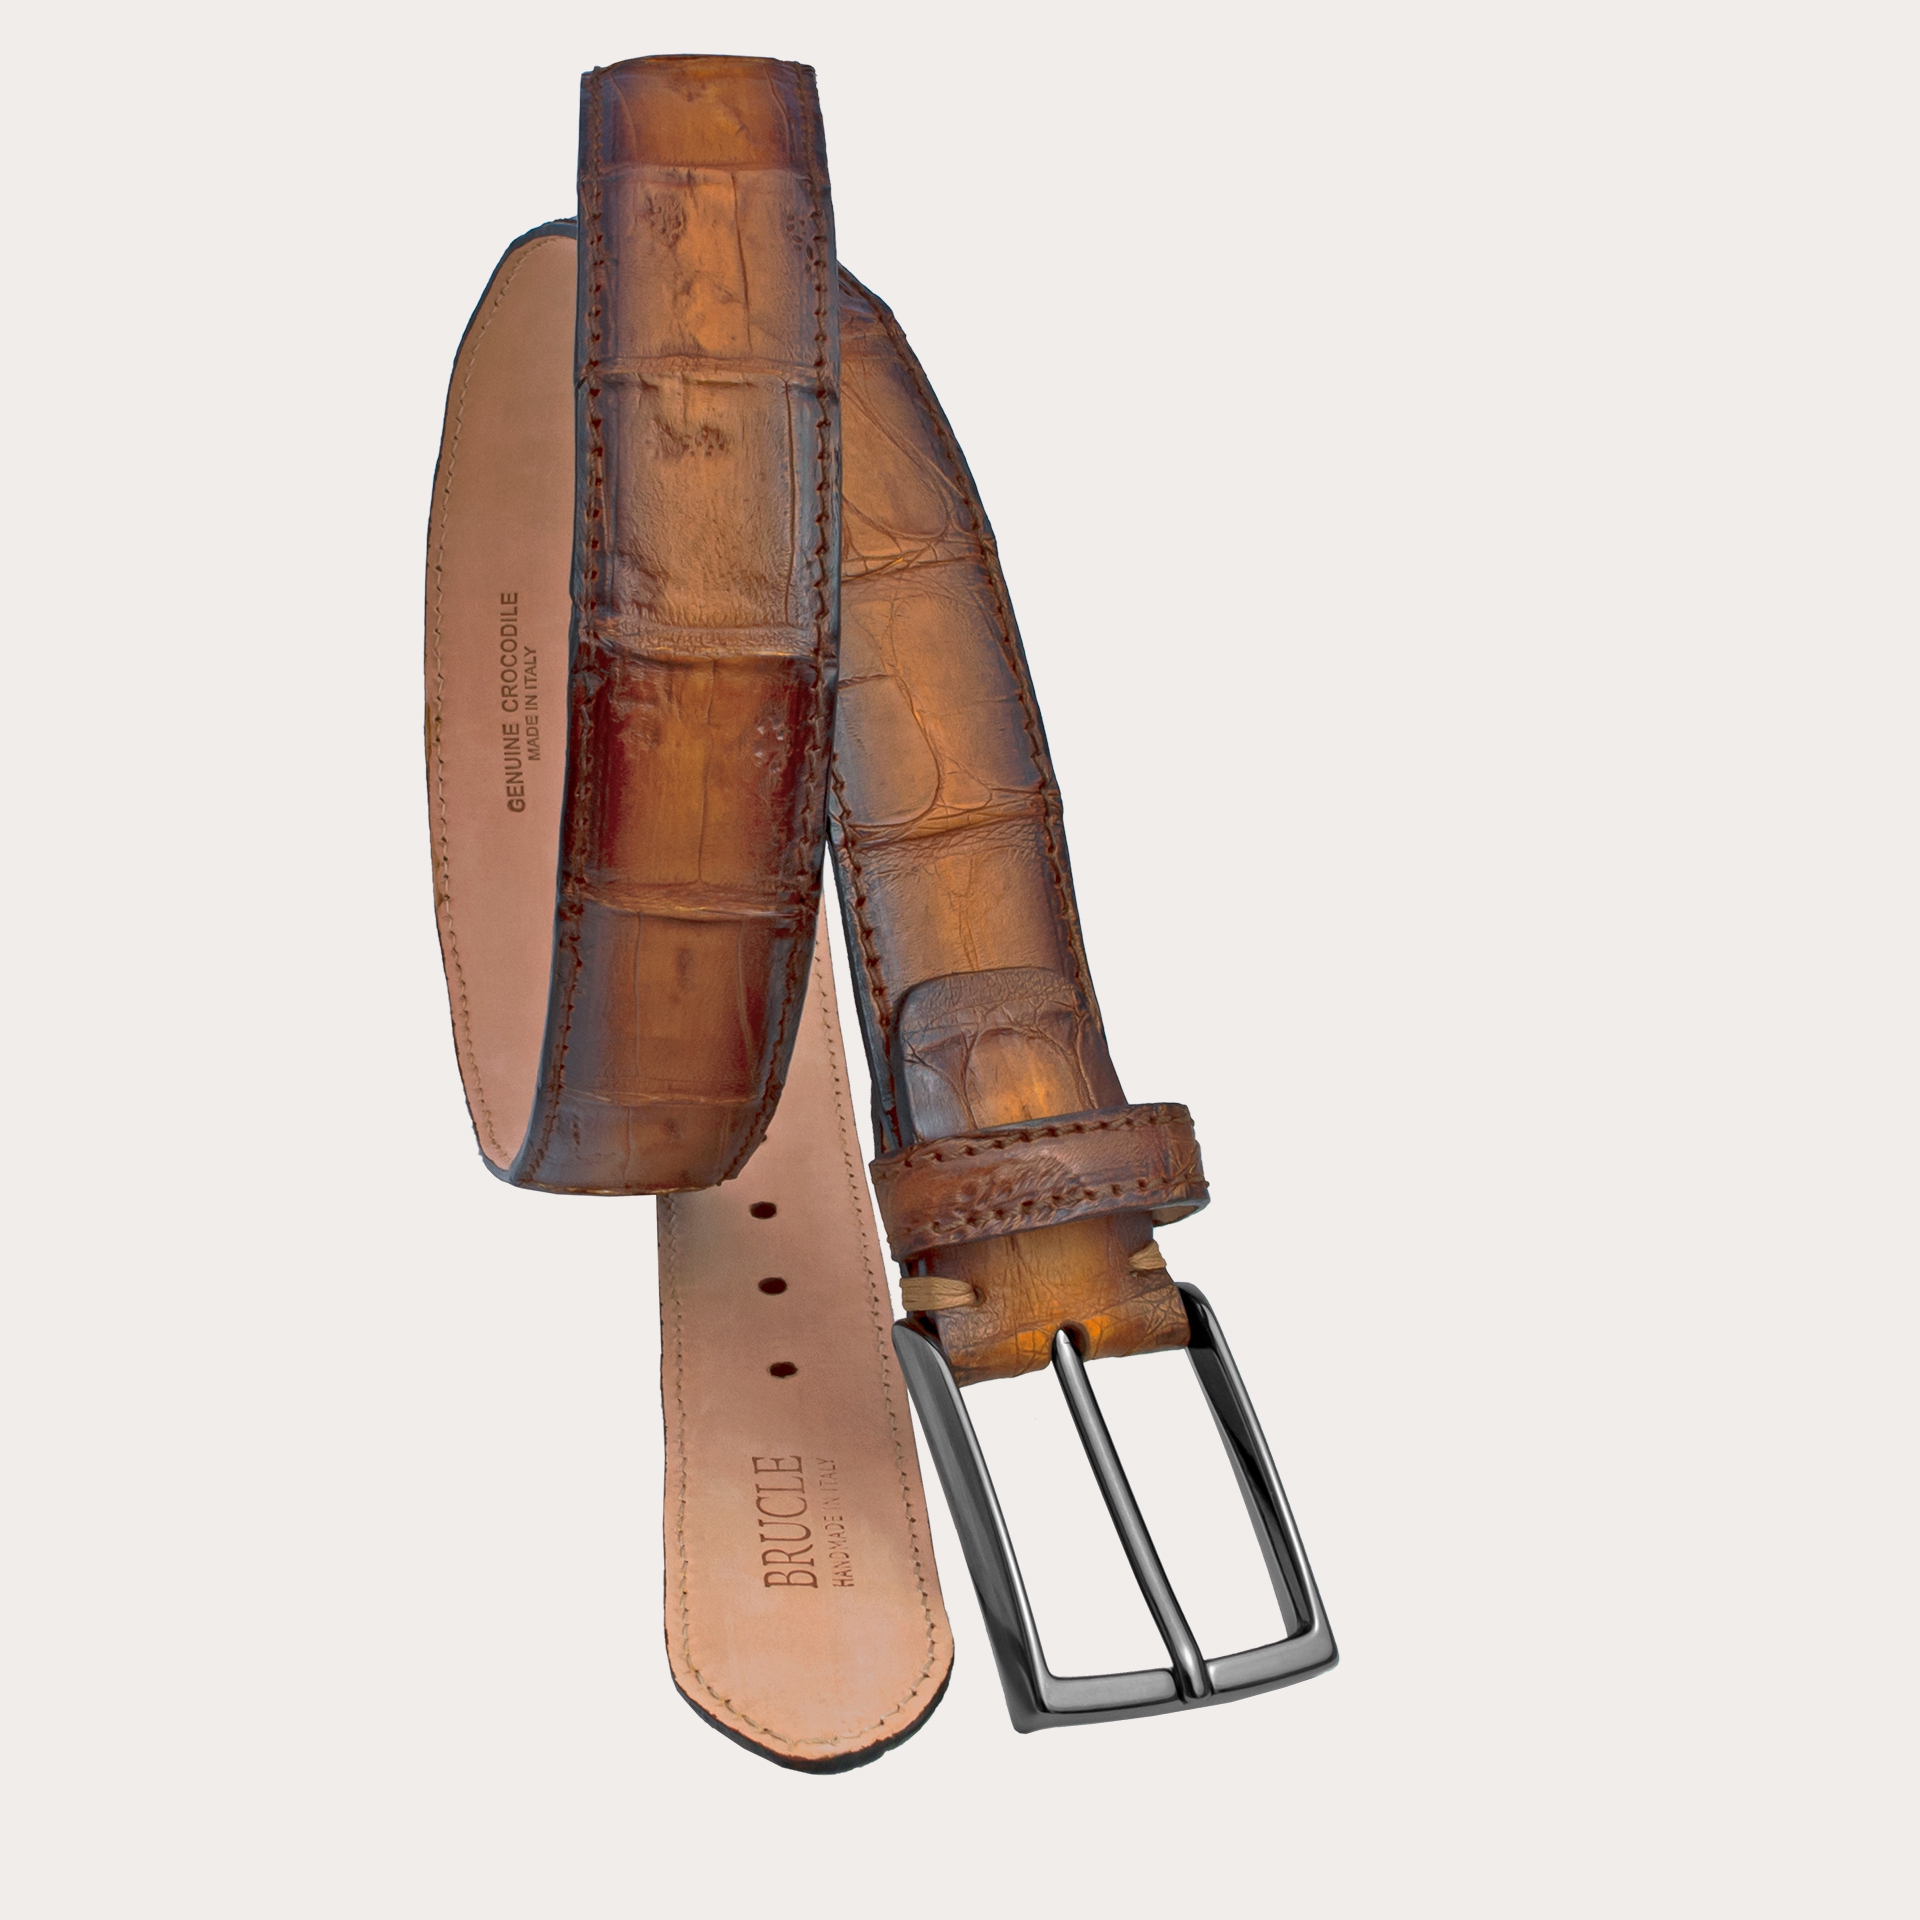 BRUCLE Cinturón refinado patinado en cola de cocodrilo, marrón y dorado